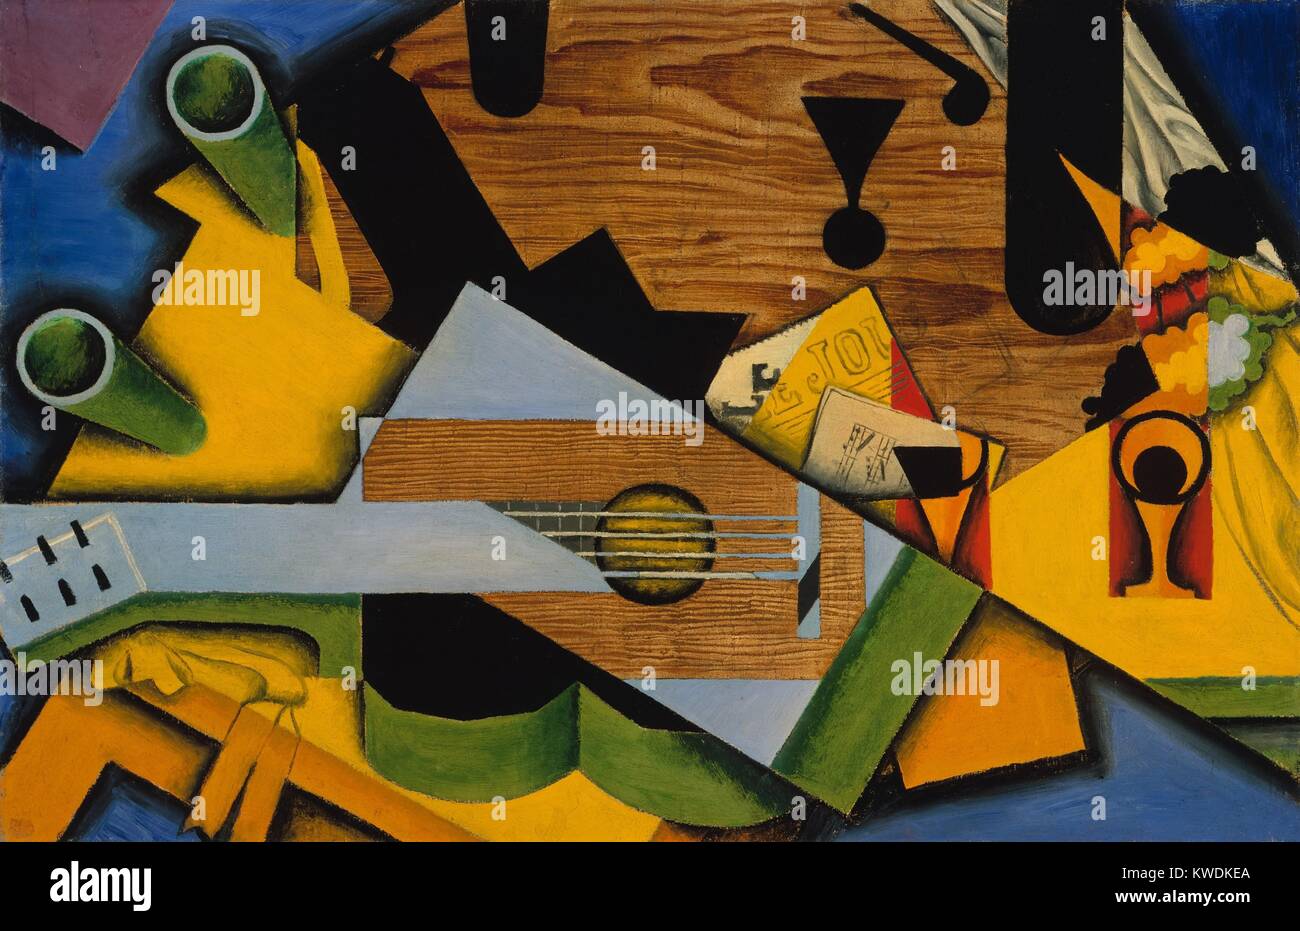 Bodegón con una guitarra de Juan Gris, 1913, pintura Cubista Español, óleo sobre lienzo. Este trabajo está fuertemente influenciado por el segundo estilo Picasso/Braque, el cubismo sintético como gris llamado. Formas planas se abstraen de los objetos, mientras que otros son impuestas geometría independiente del asunto (BSLOC 2017 7 4) Foto de stock